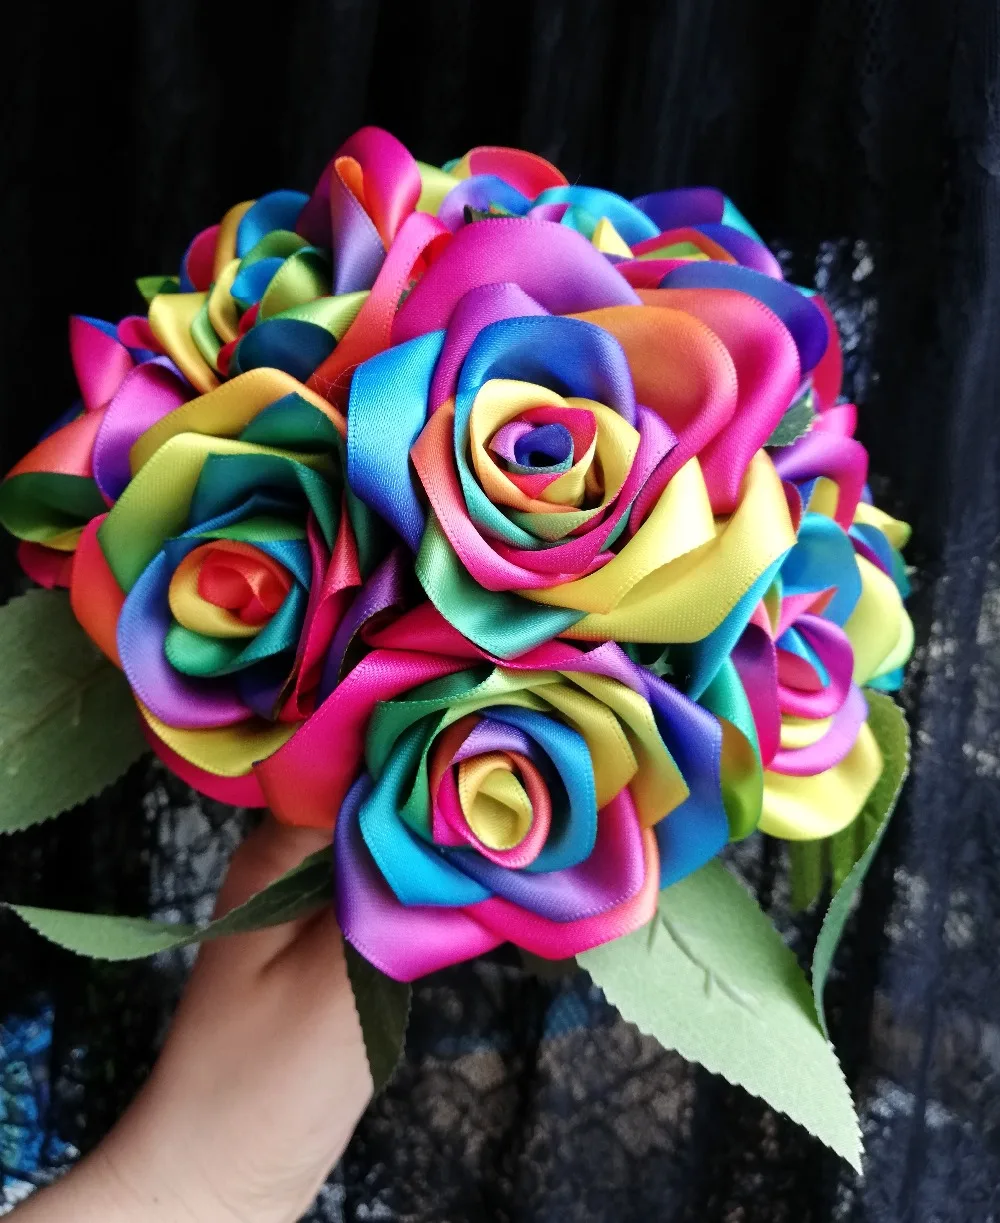 Новые шелковые ленточная Роза ручной работы цвета радуги Сатиновые розы/украшение на свадьбу цветы де мариаж ленточная брошь украшение дома